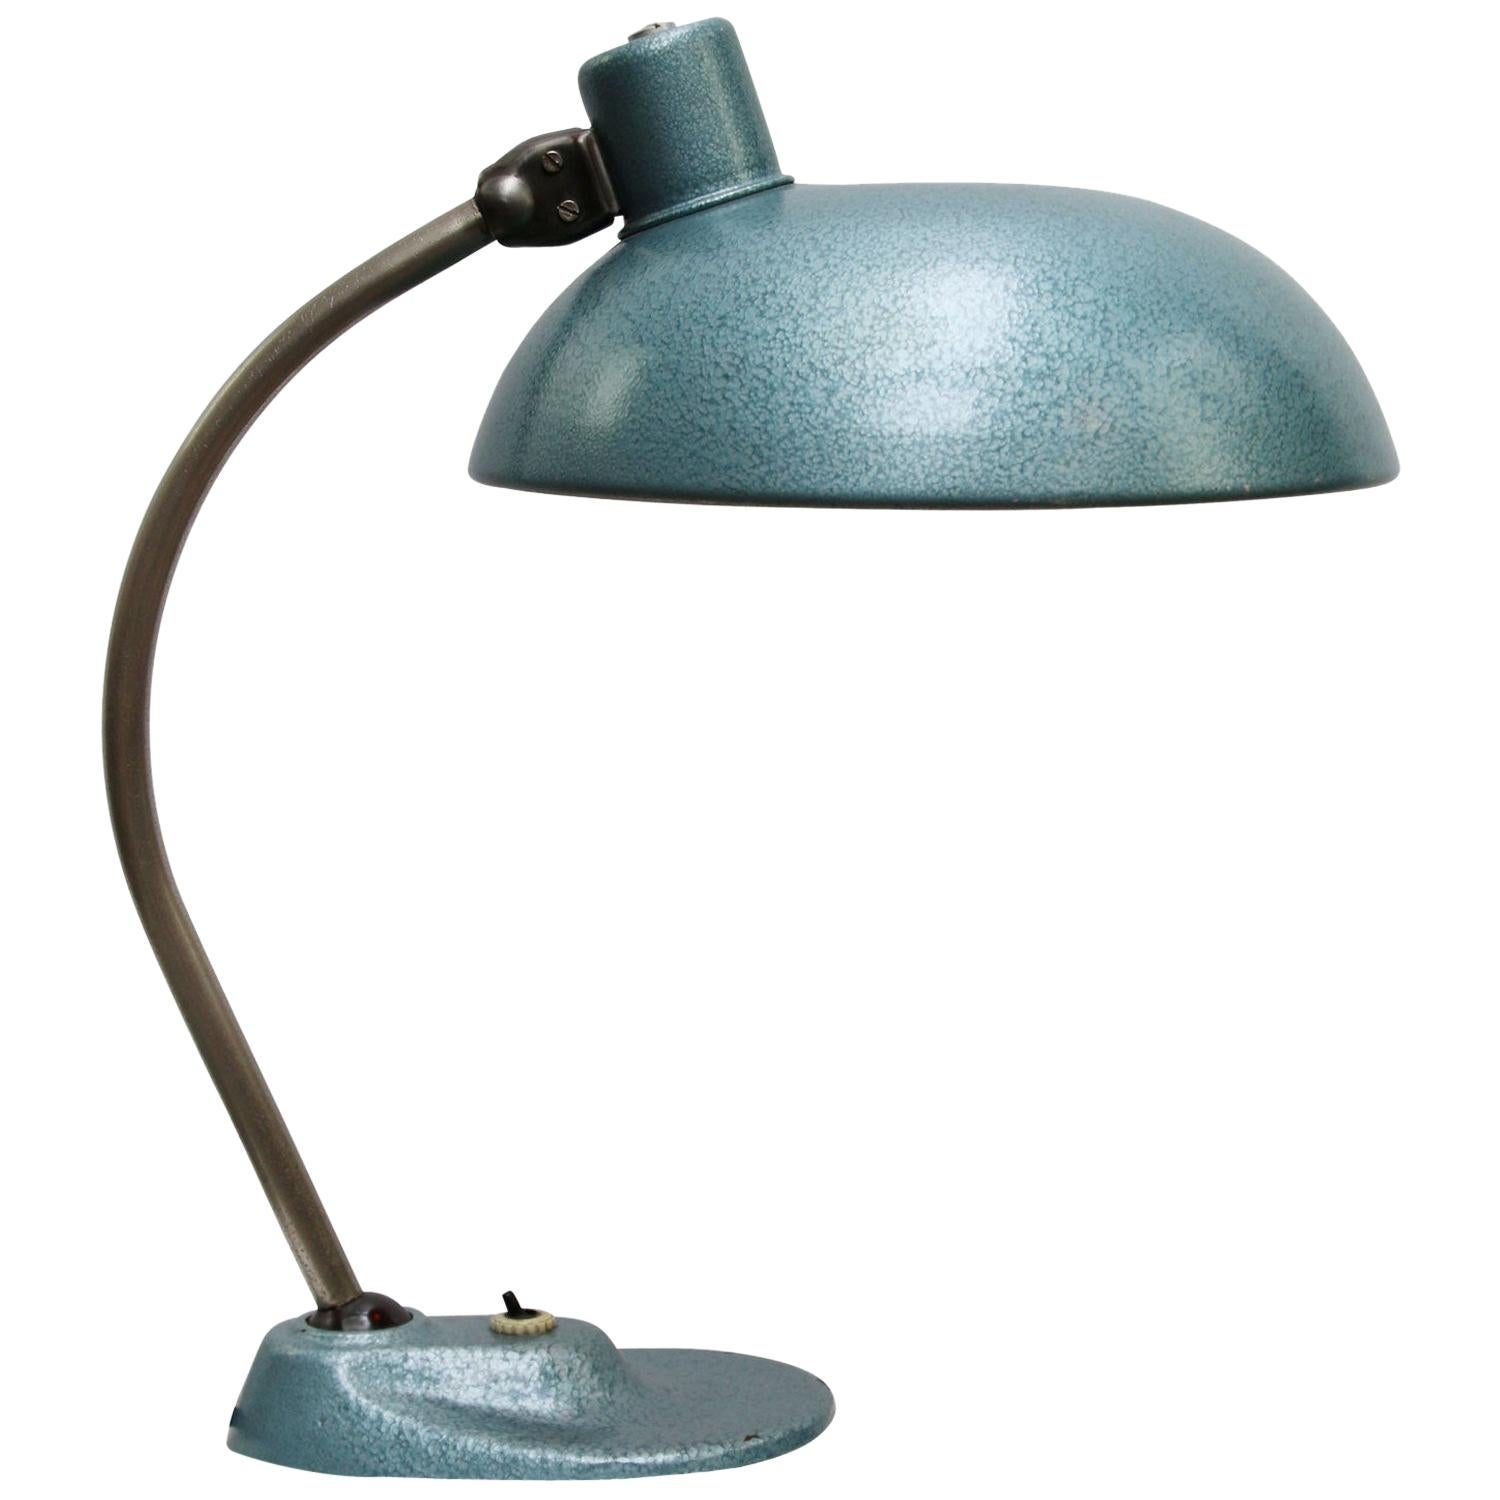 Blue Metal Vintage Industrial Table Desk Lamp